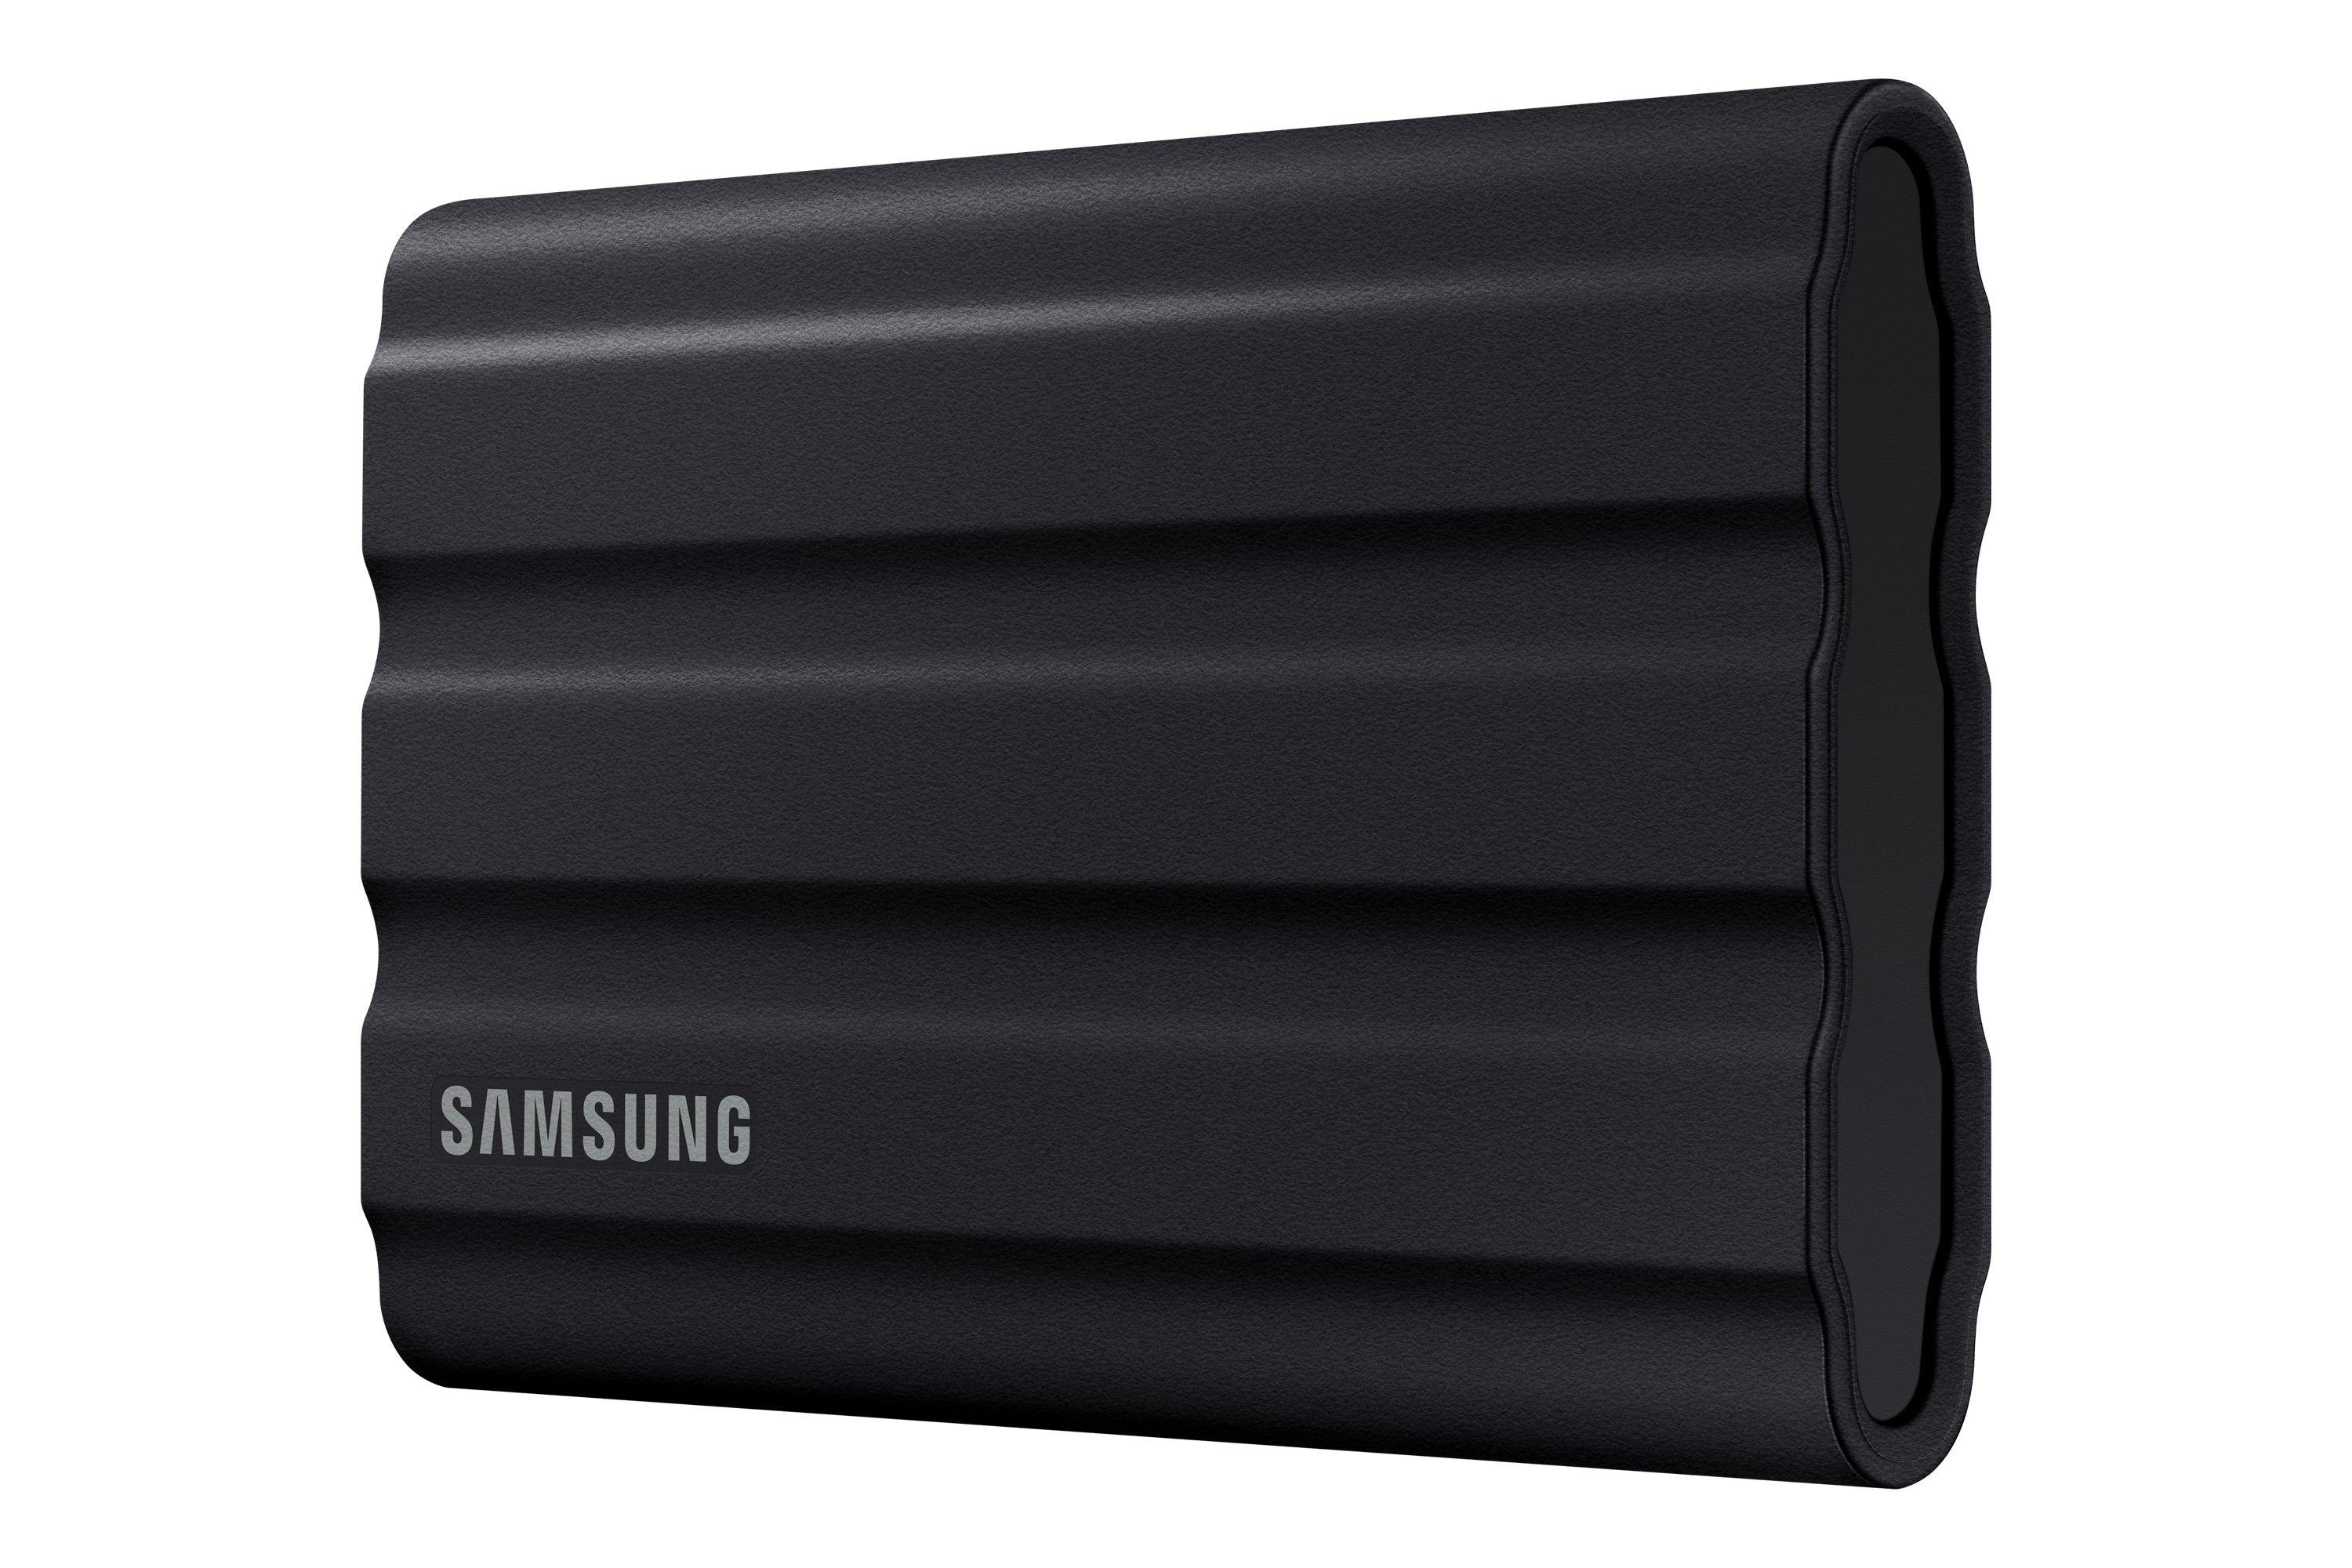 Samsung T7 Shield Solid state-drev MU-PE4T0S 4TB USB 3.2 Gen 2